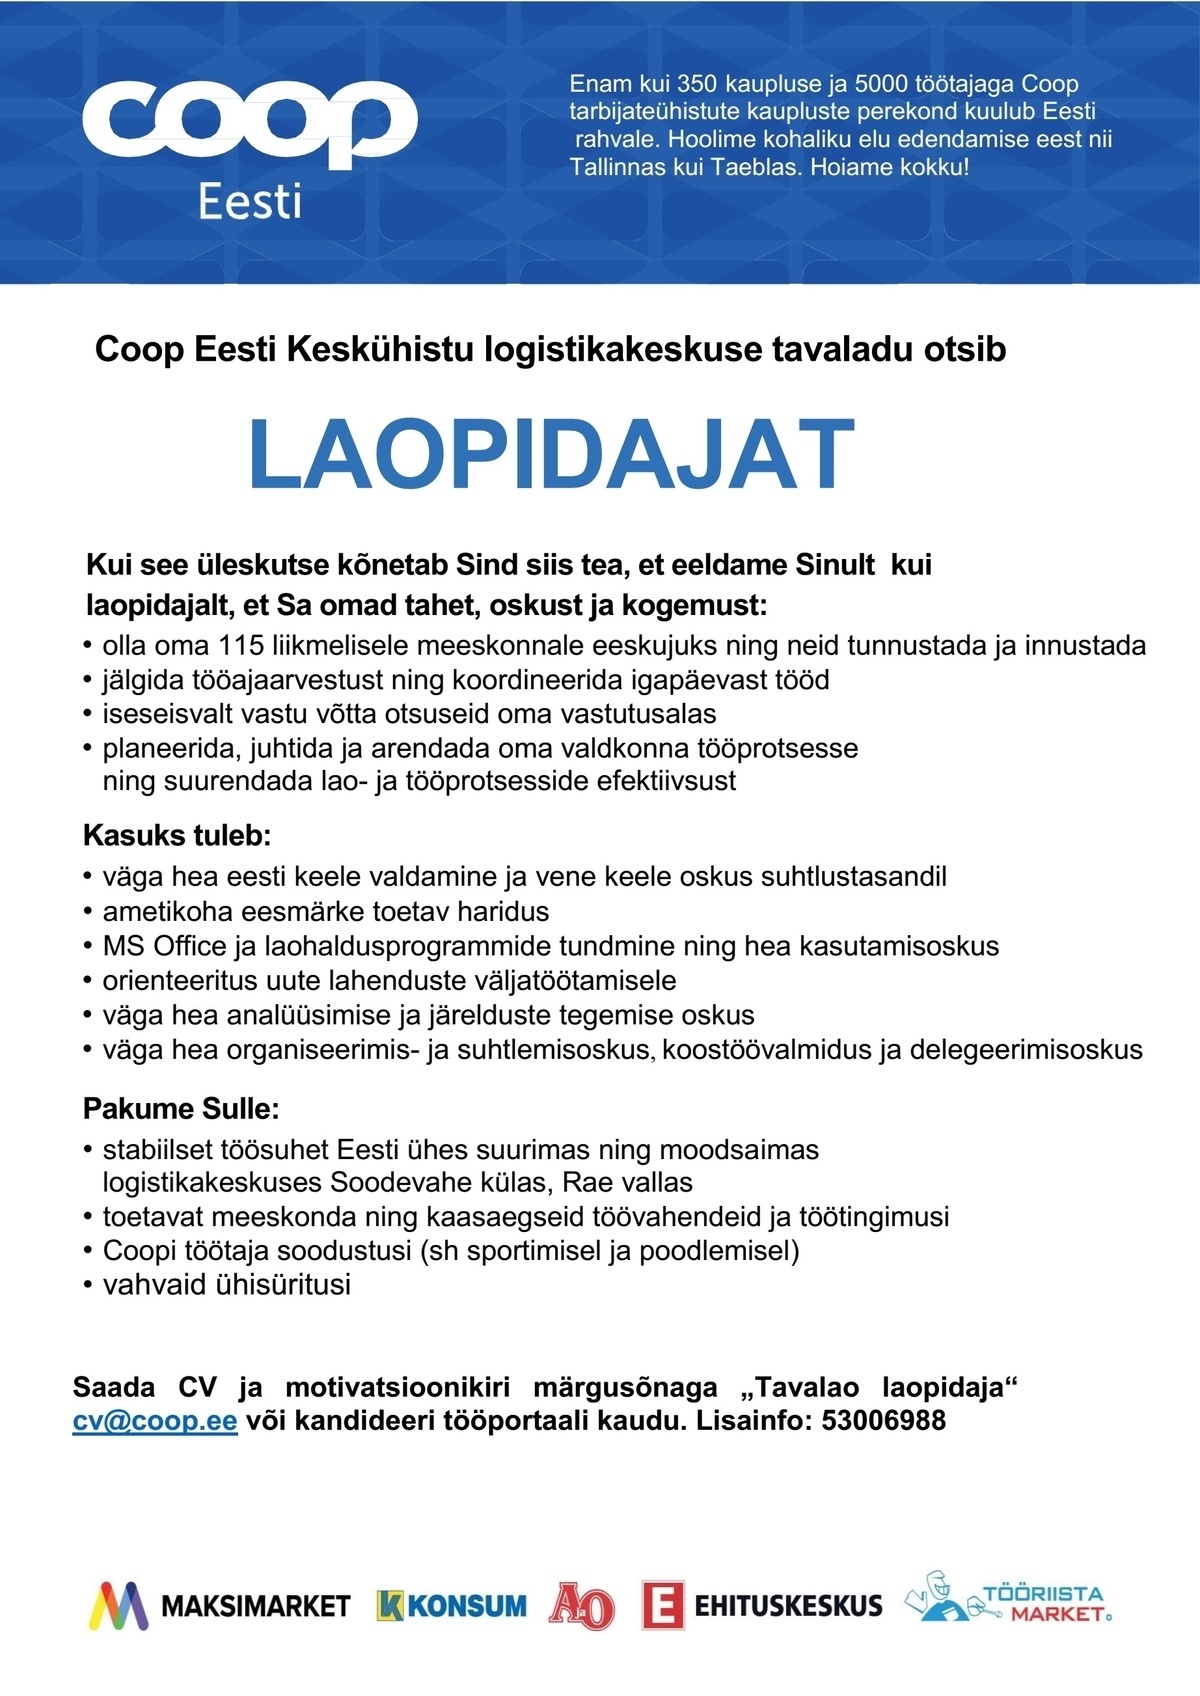 Coop Eesti Keskühistu Laopidaja (tavaladu)